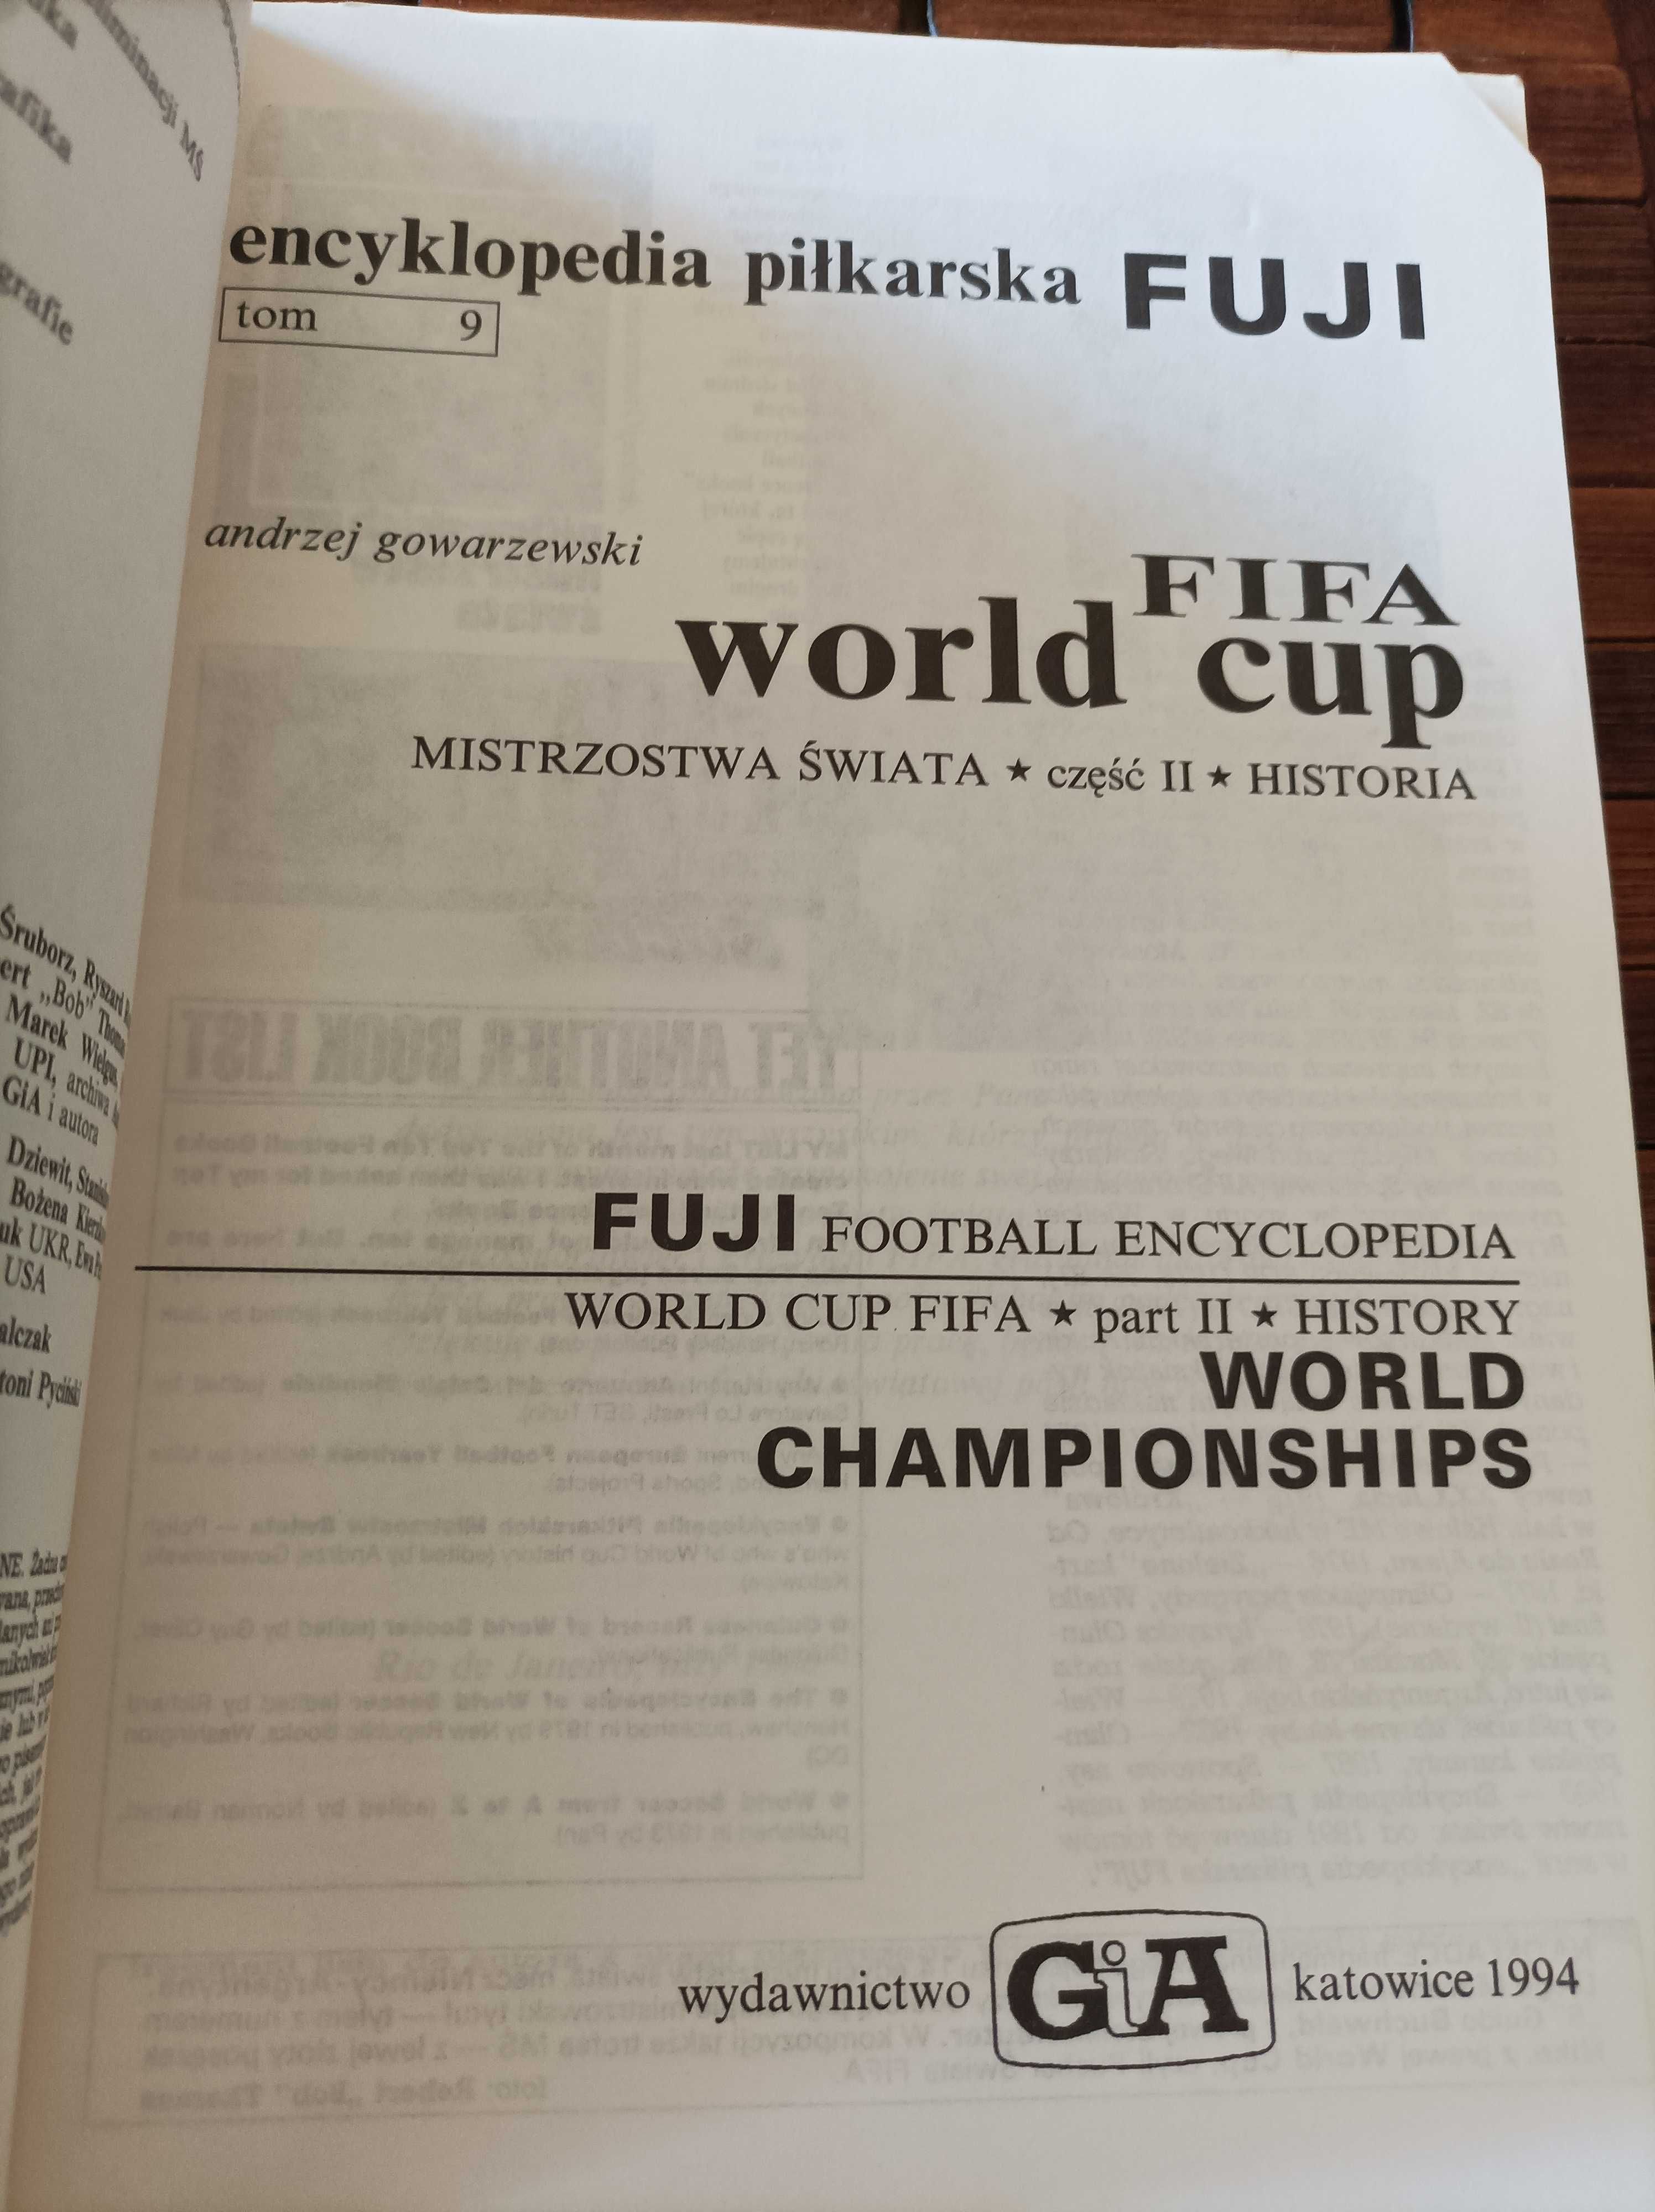 Gowarzewski encyklopedia piłkarska mistrzostwa świata